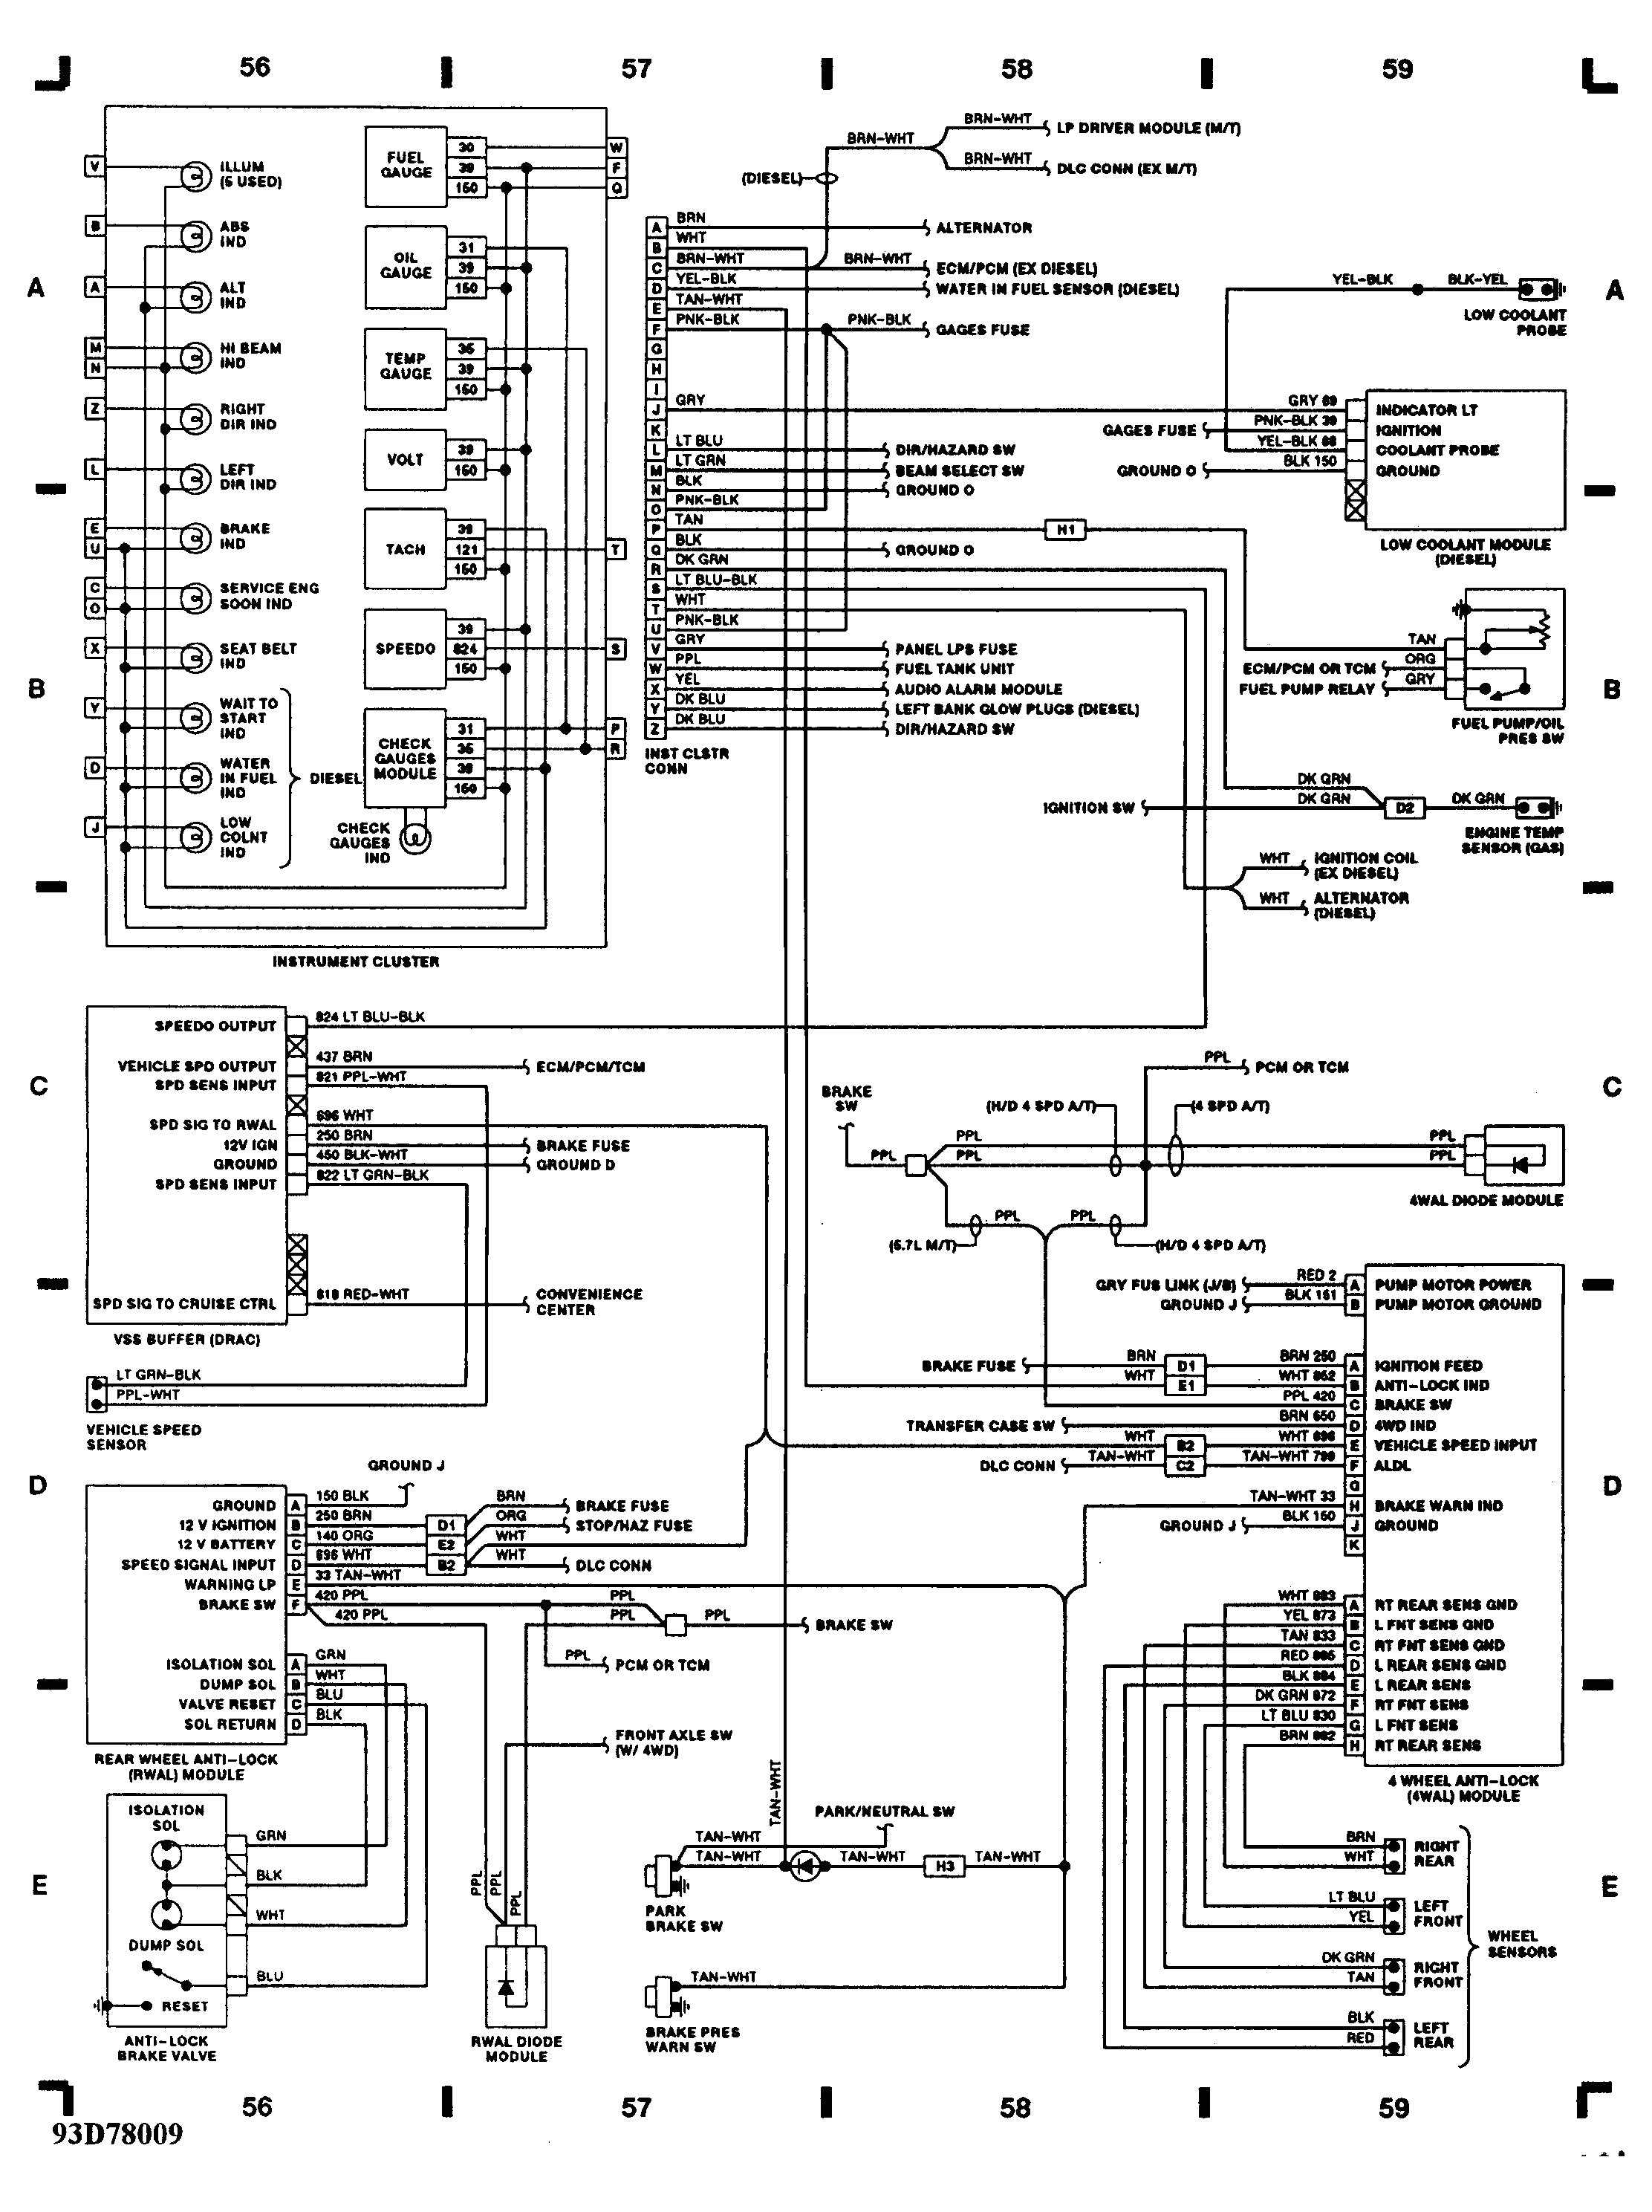 1993 chevrolet wiring diagram schema diagram database 93 chevy wiring diagrams 1993 chevy 3500 transmission wiring